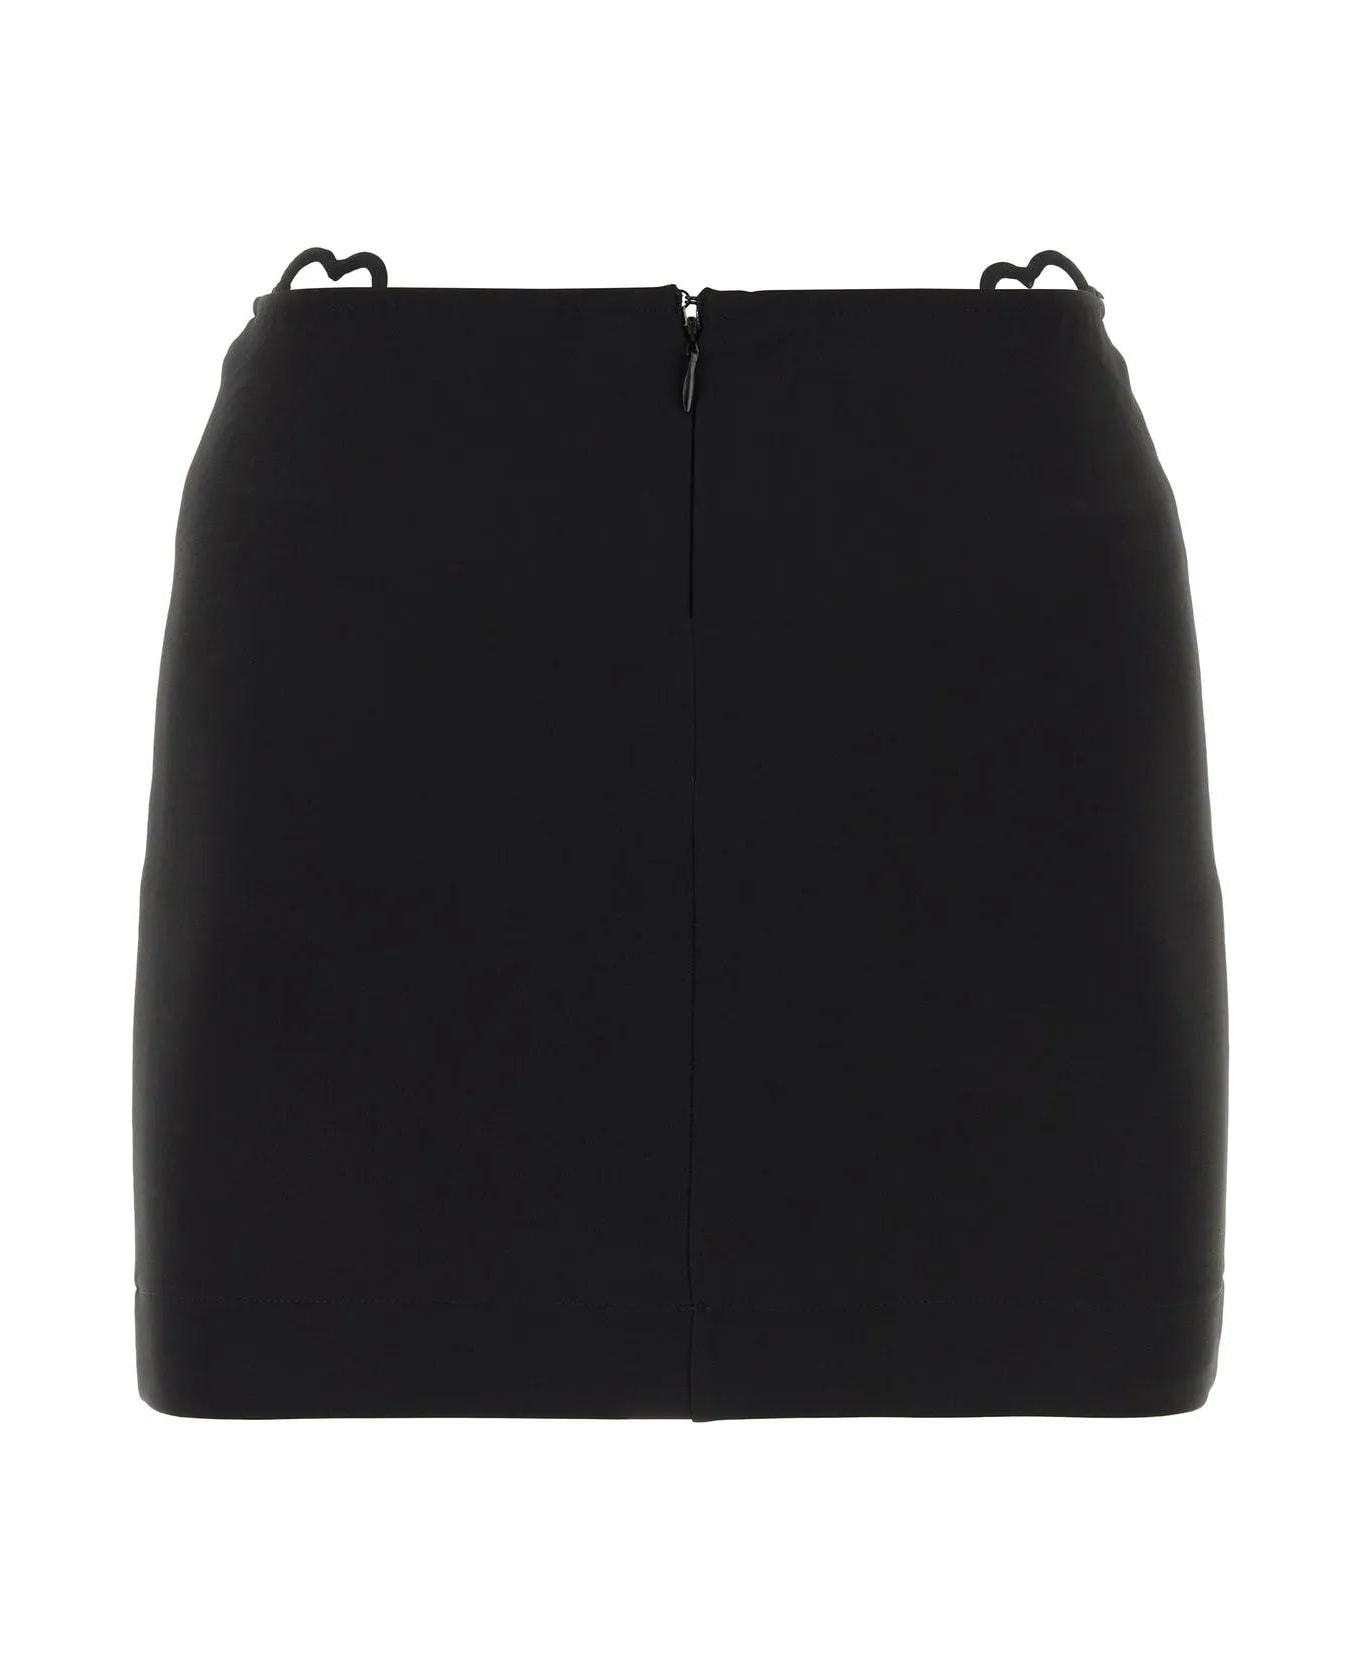 Nensi Dojaka Black Viscose Blend Mini Skirt - Black スカート